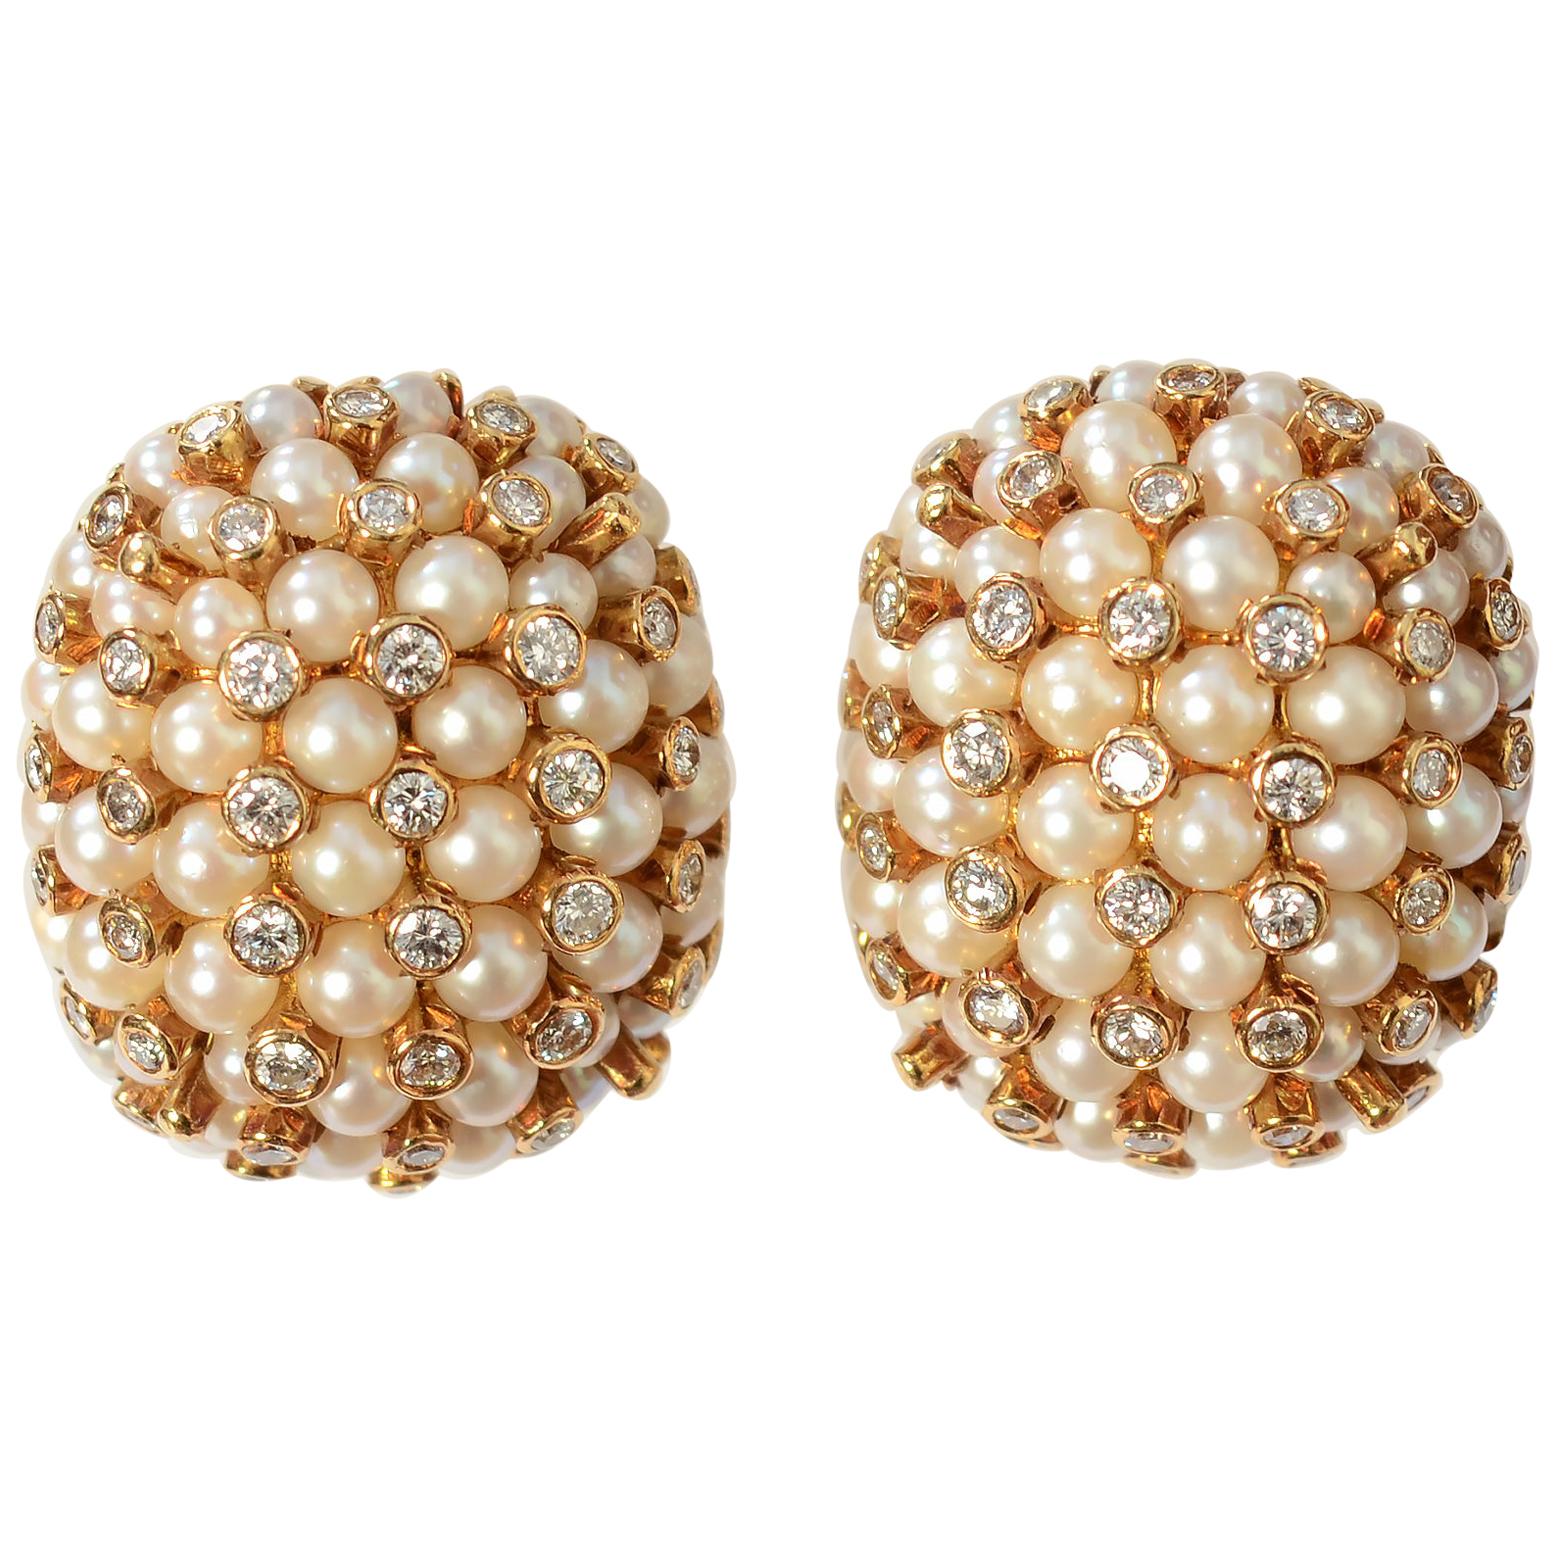 Boucles d'oreilles en or avec perles et diamants